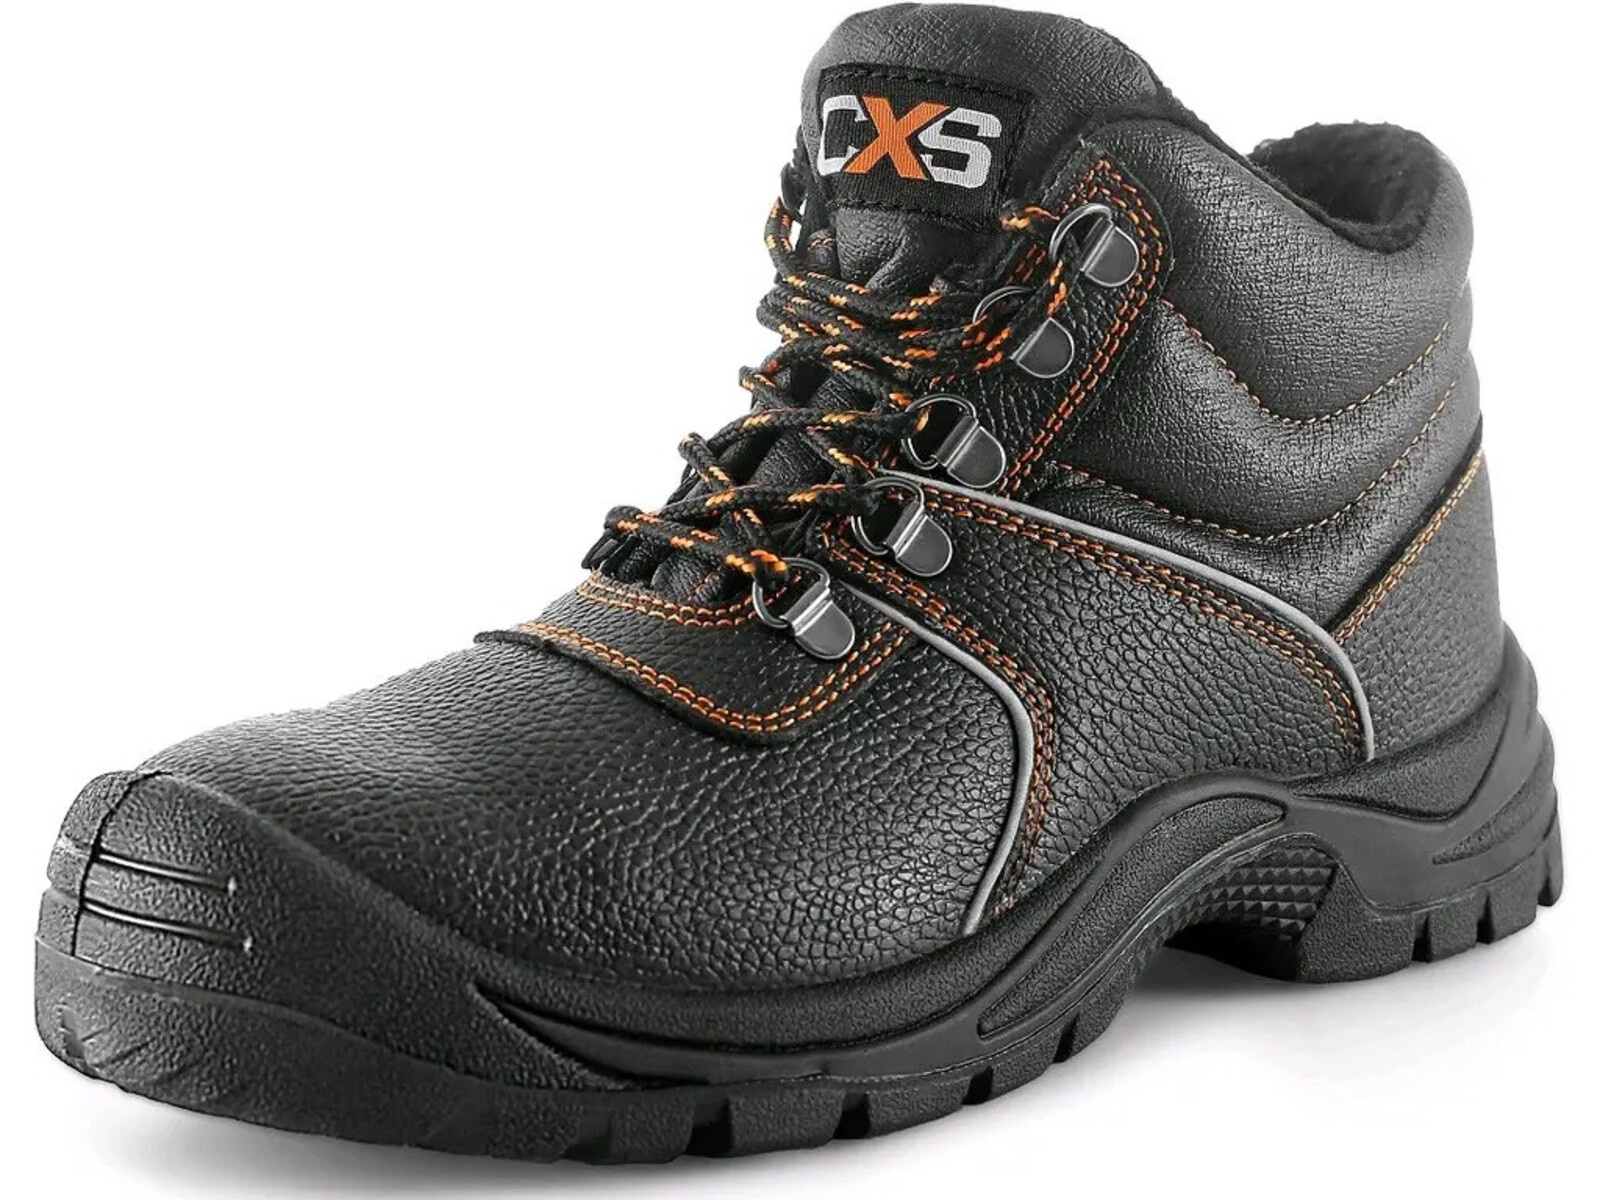 Zimná bezpečnostná členková obuv CXS Stone Apatit Winter S3 SRC - veľkosť: 39, farba: čierna/oranžová